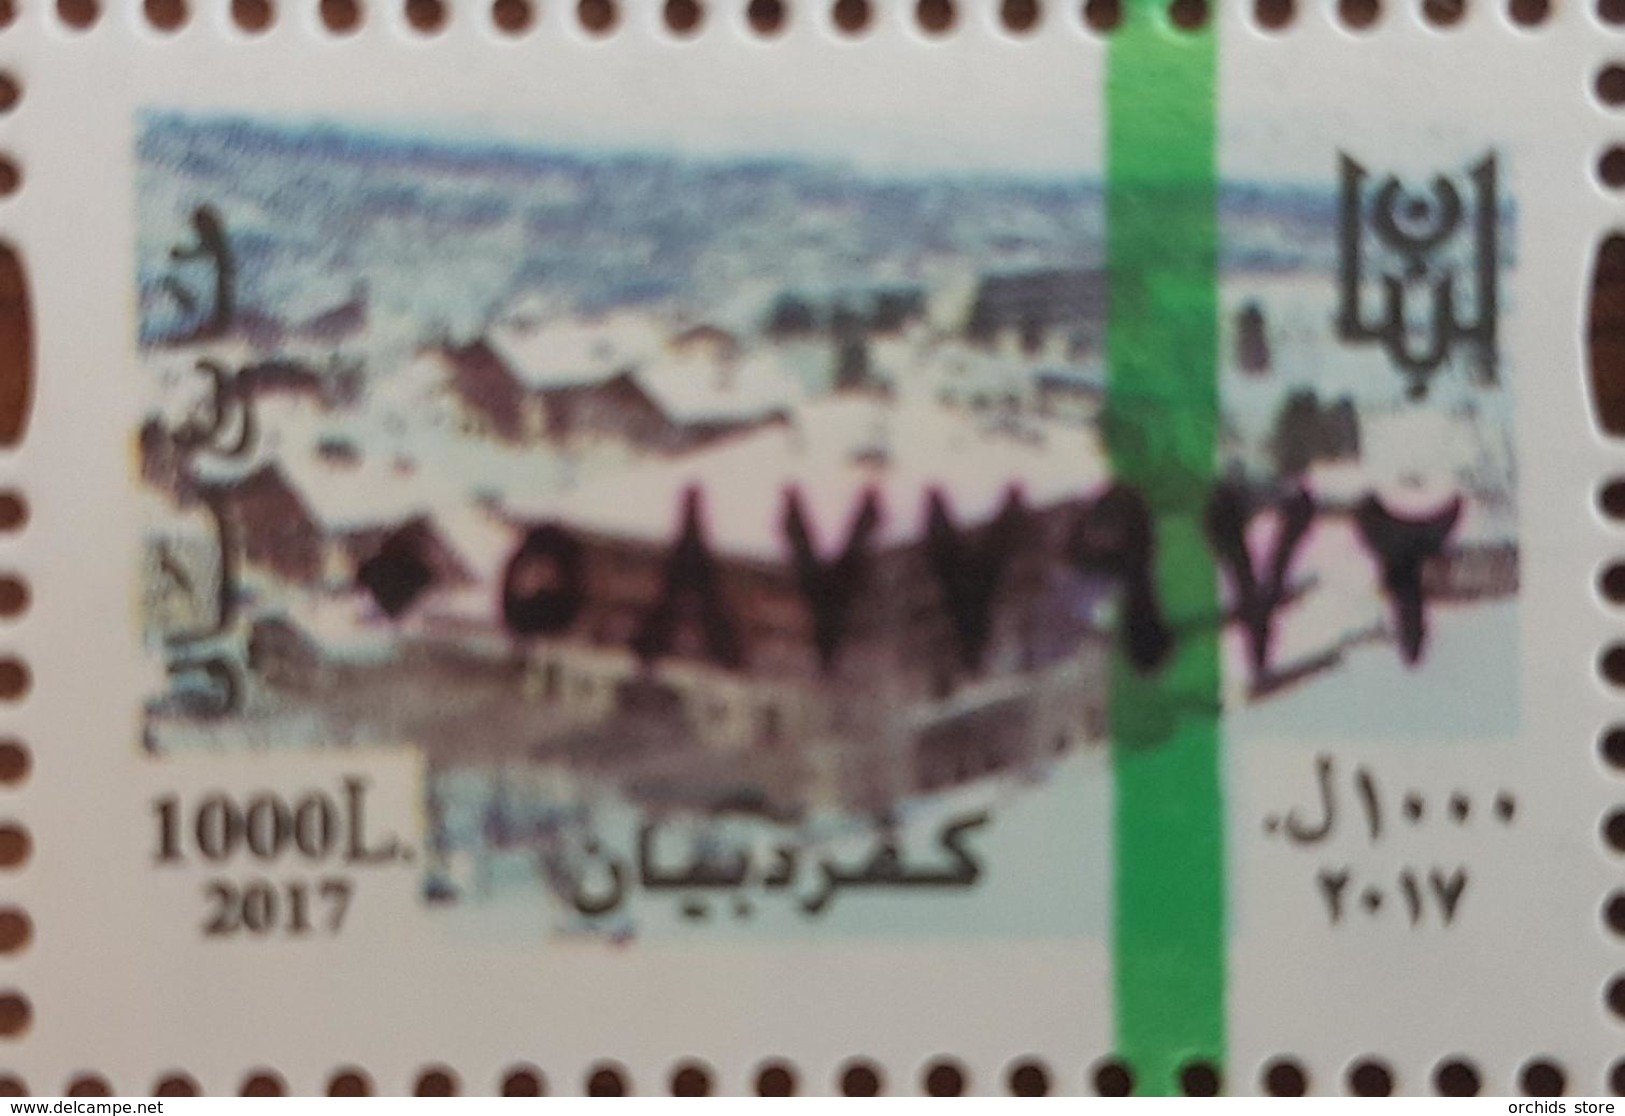 Lebanon 2018 MNH NEW Fiscal Revenue Stamp - 1000L Kferdibian Ski Resort & Hotel, Dated 2017 - Lebanon